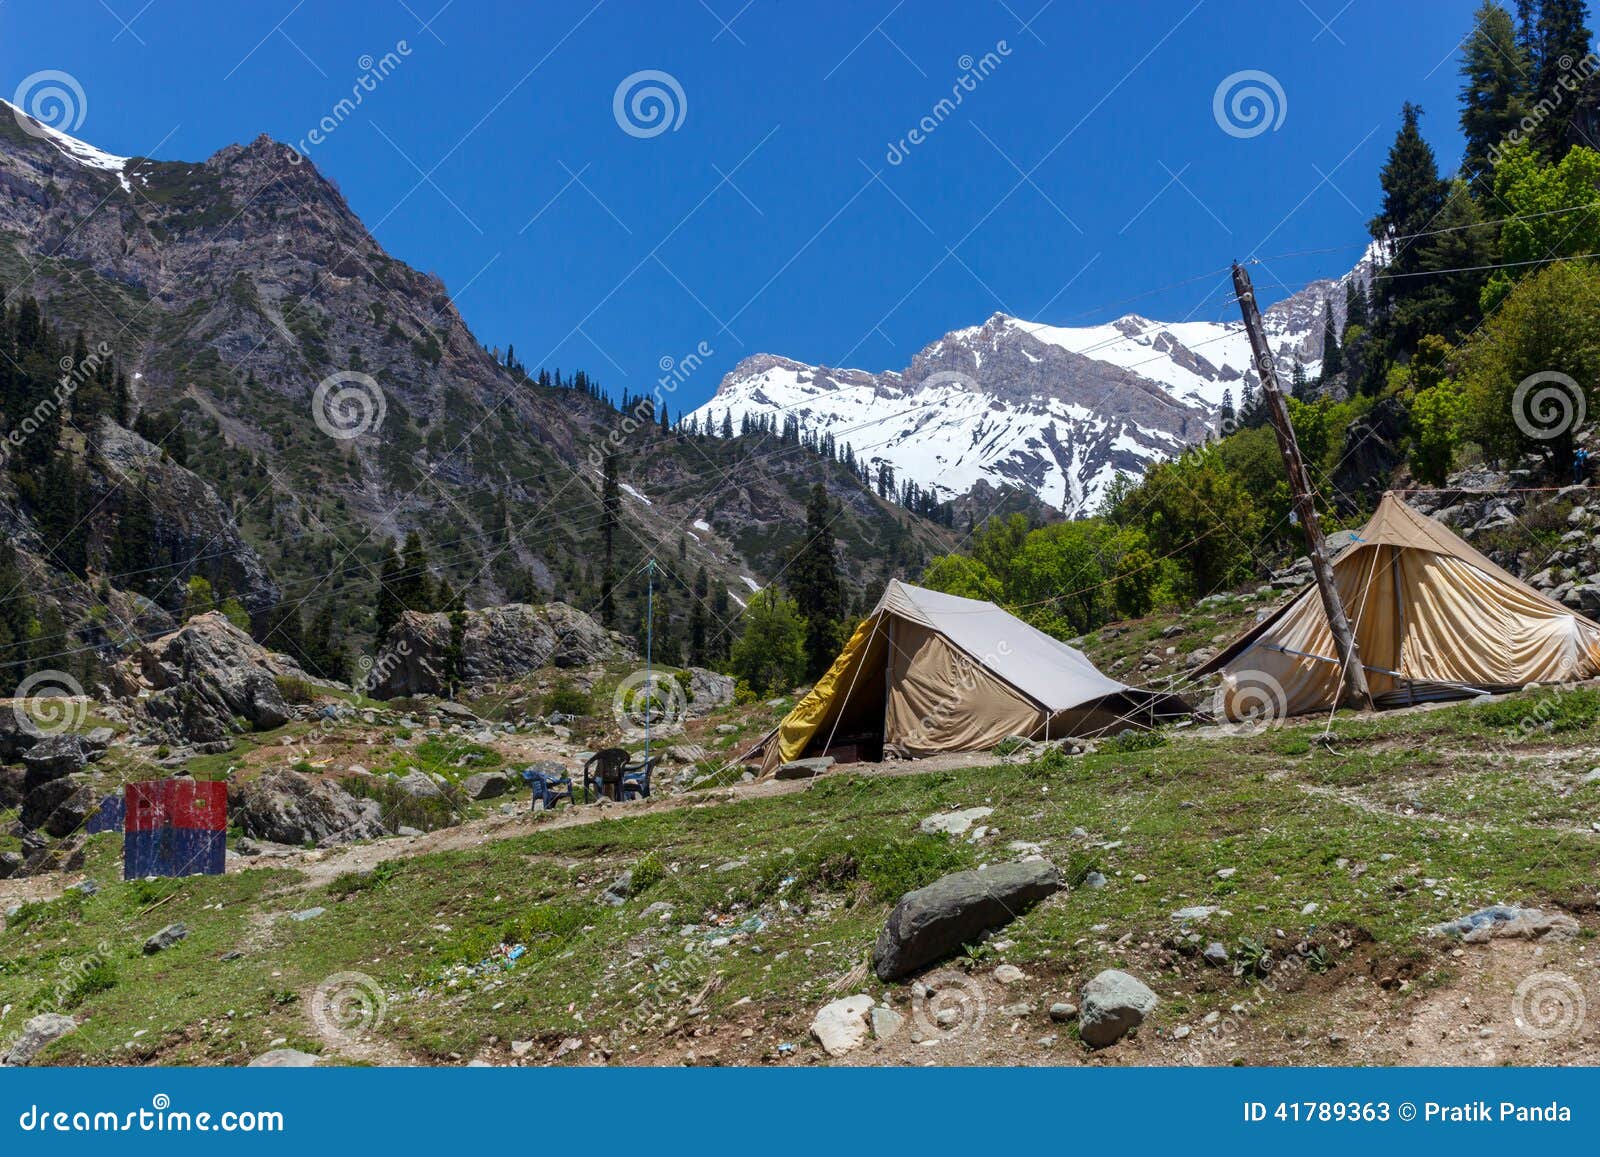 adventurers camping, jammu and kashmir